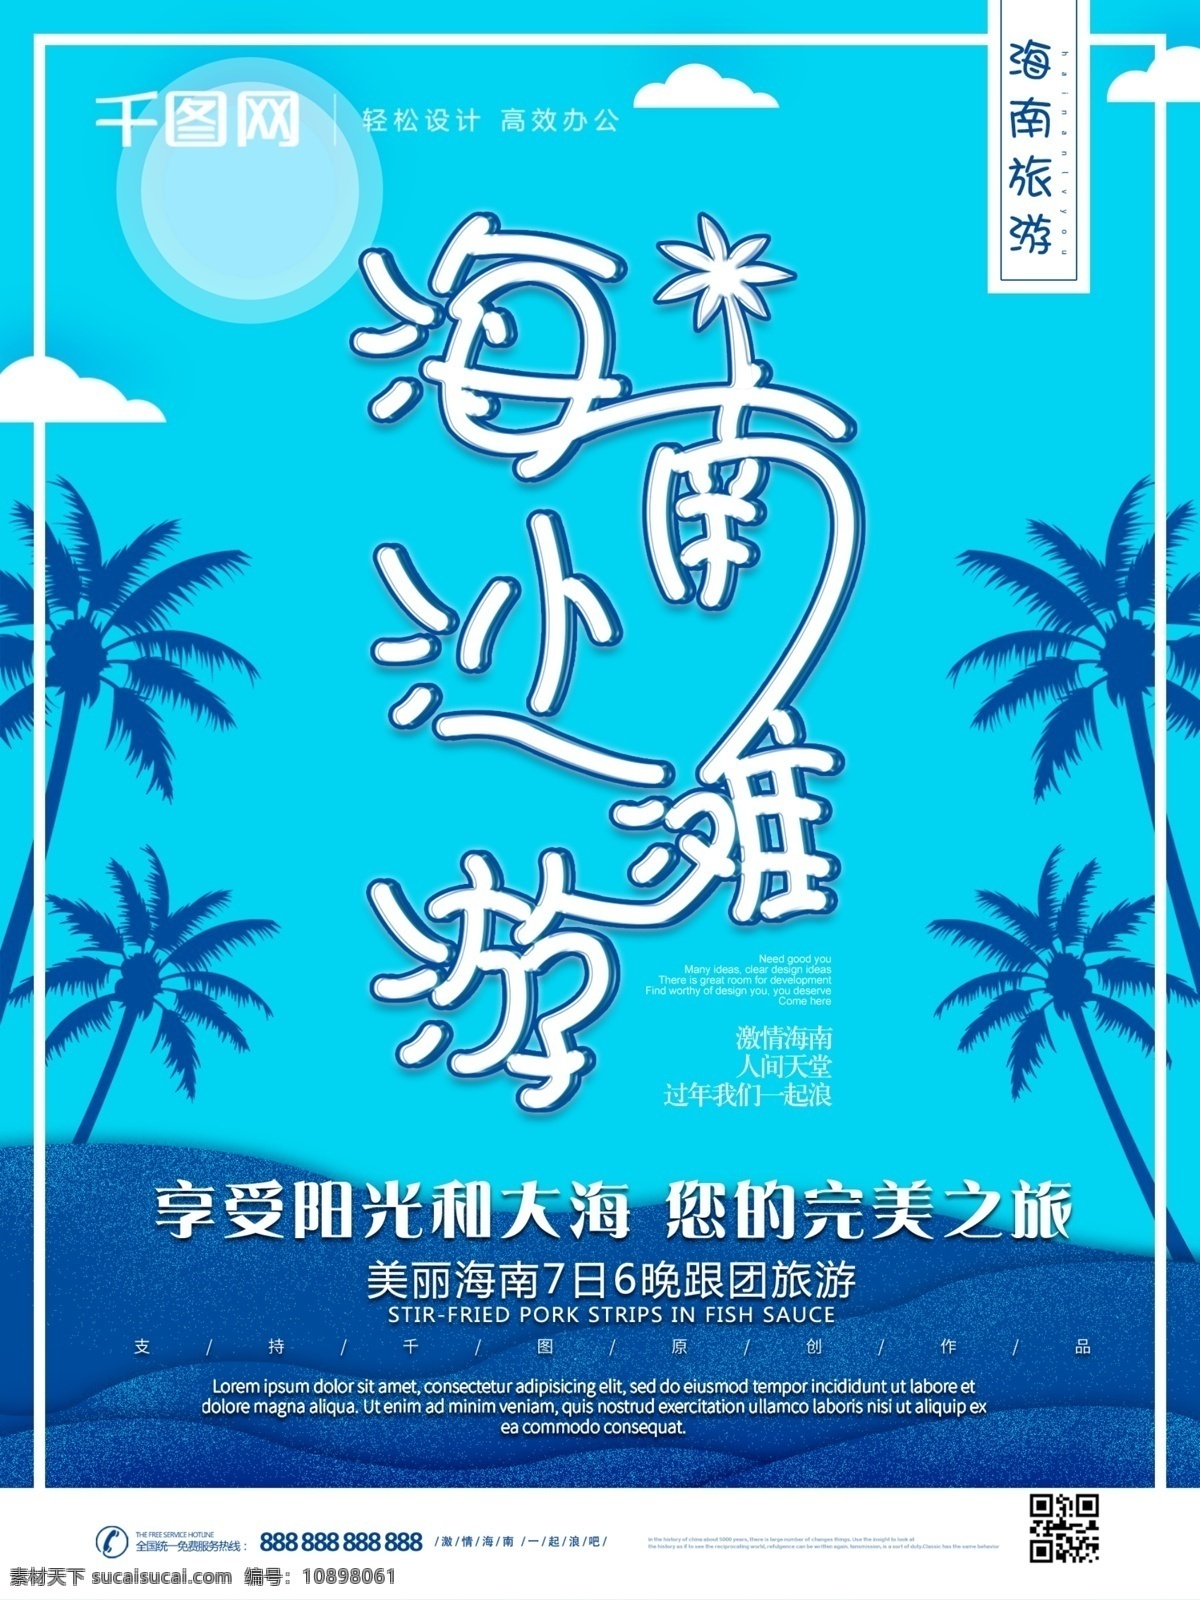 原创 冷色 调 海南 沙滩 旅游 宣传海报 椰子树 宣传 冷色调 海报